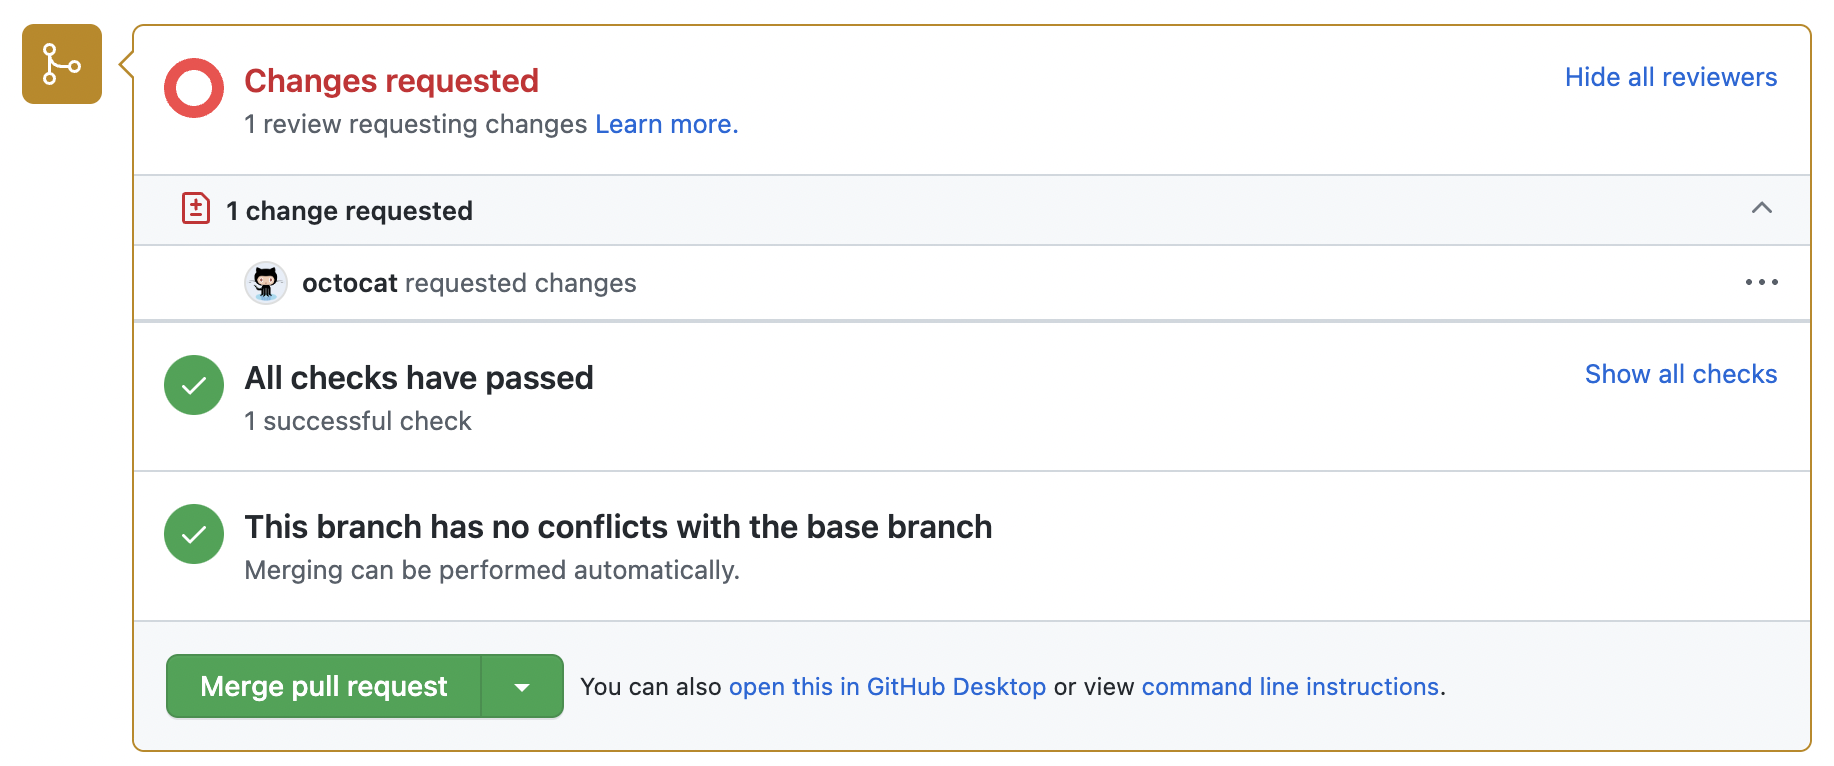 Captura de pantalla del cuadro de combinación para una solicitud de incorporación de cambios. Aparece una revisión de Octocat con los cambios solicitados.